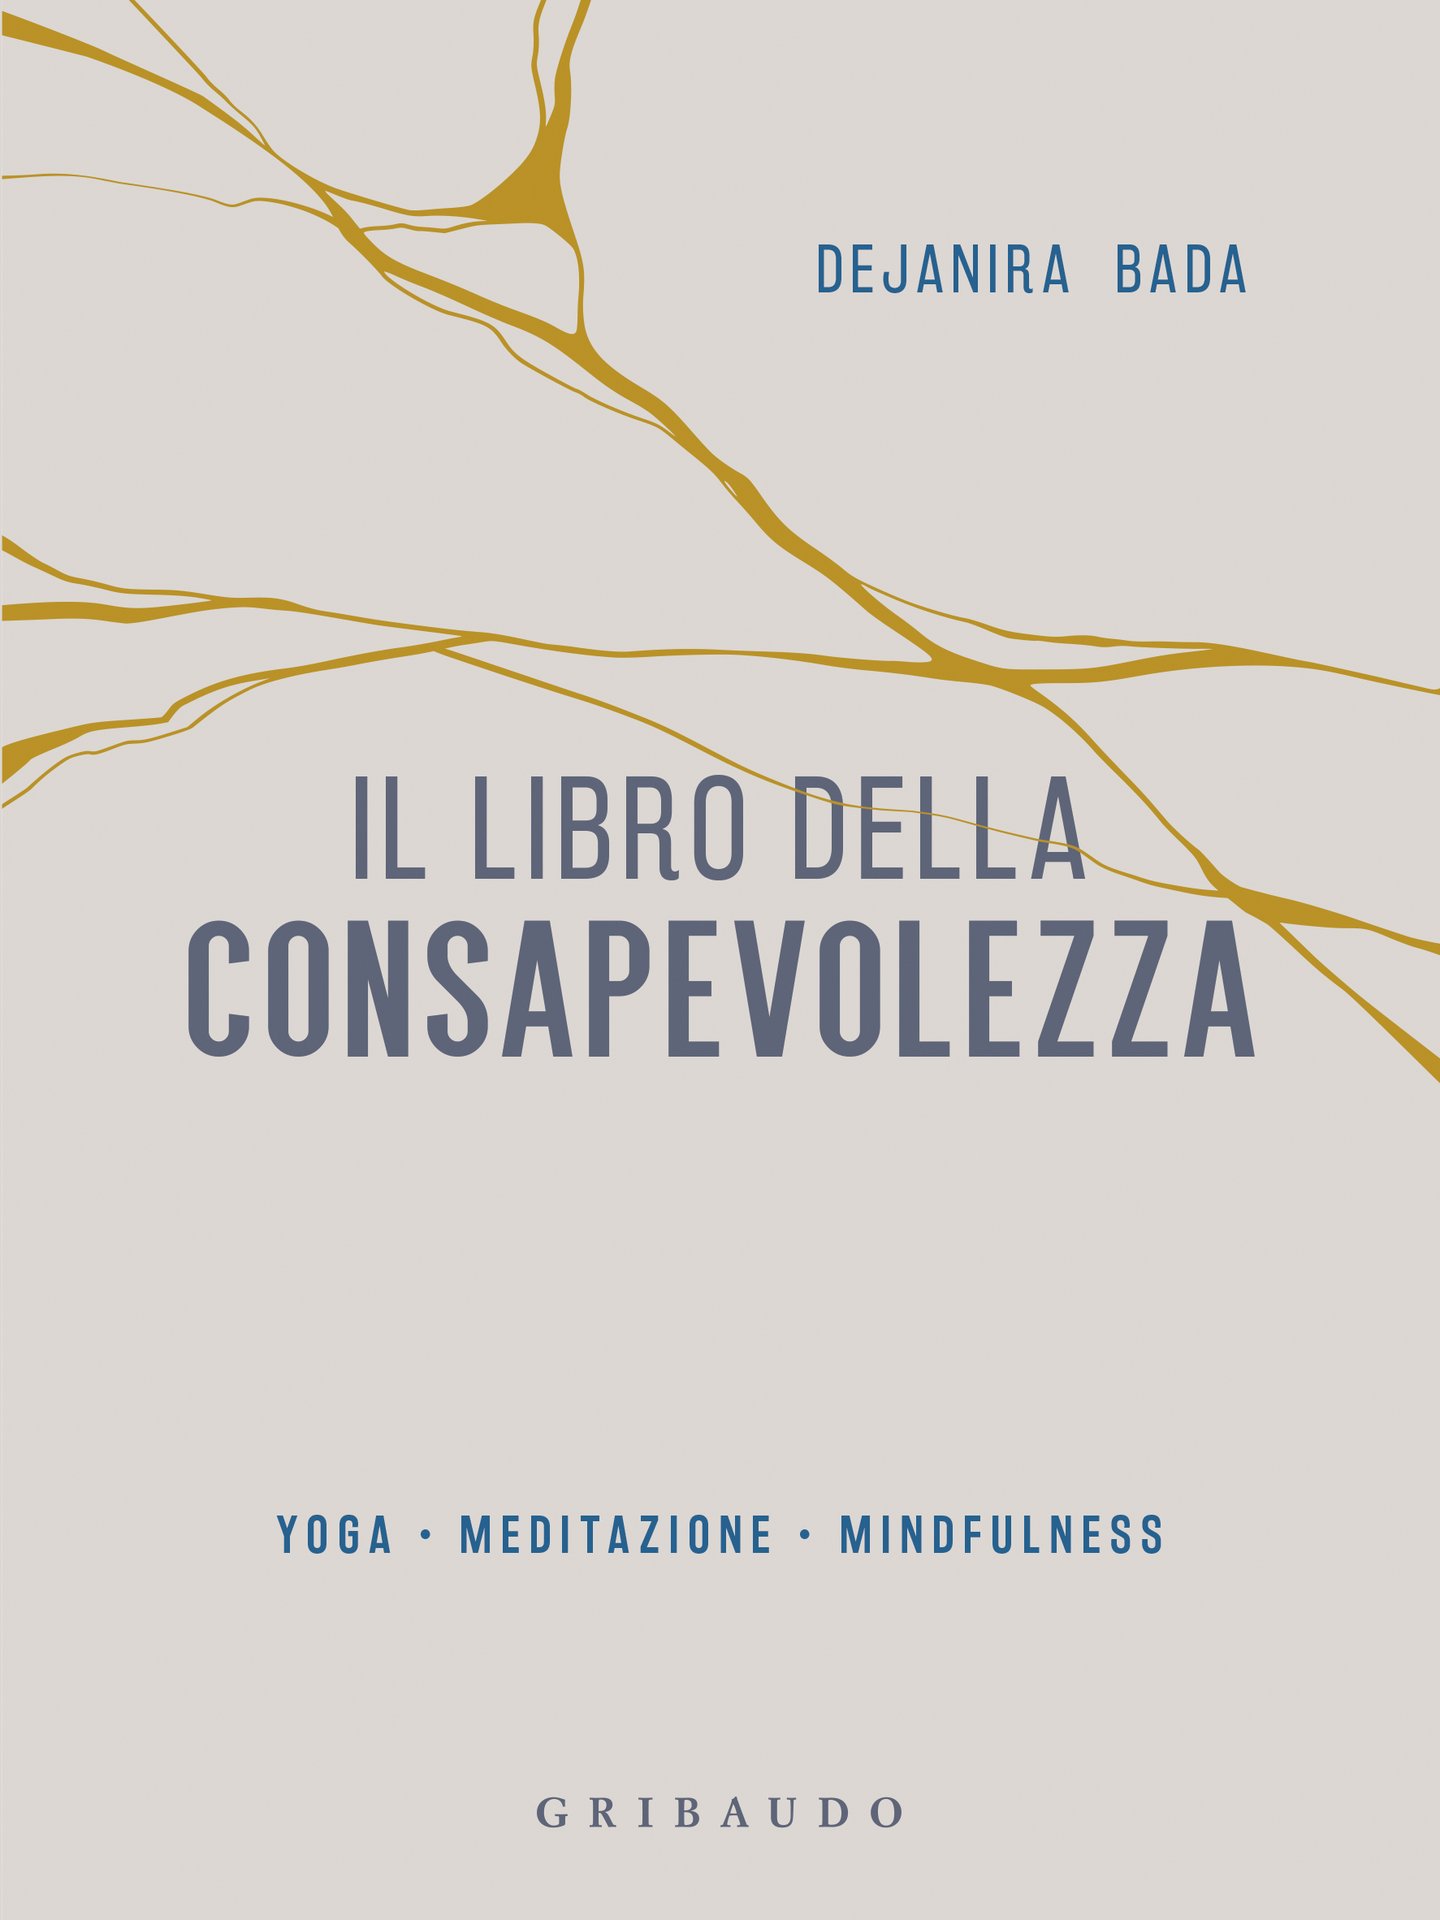 Dejanira Bada presenta Il libro della consapevolezza con Maria Beatrice Toro a Roma